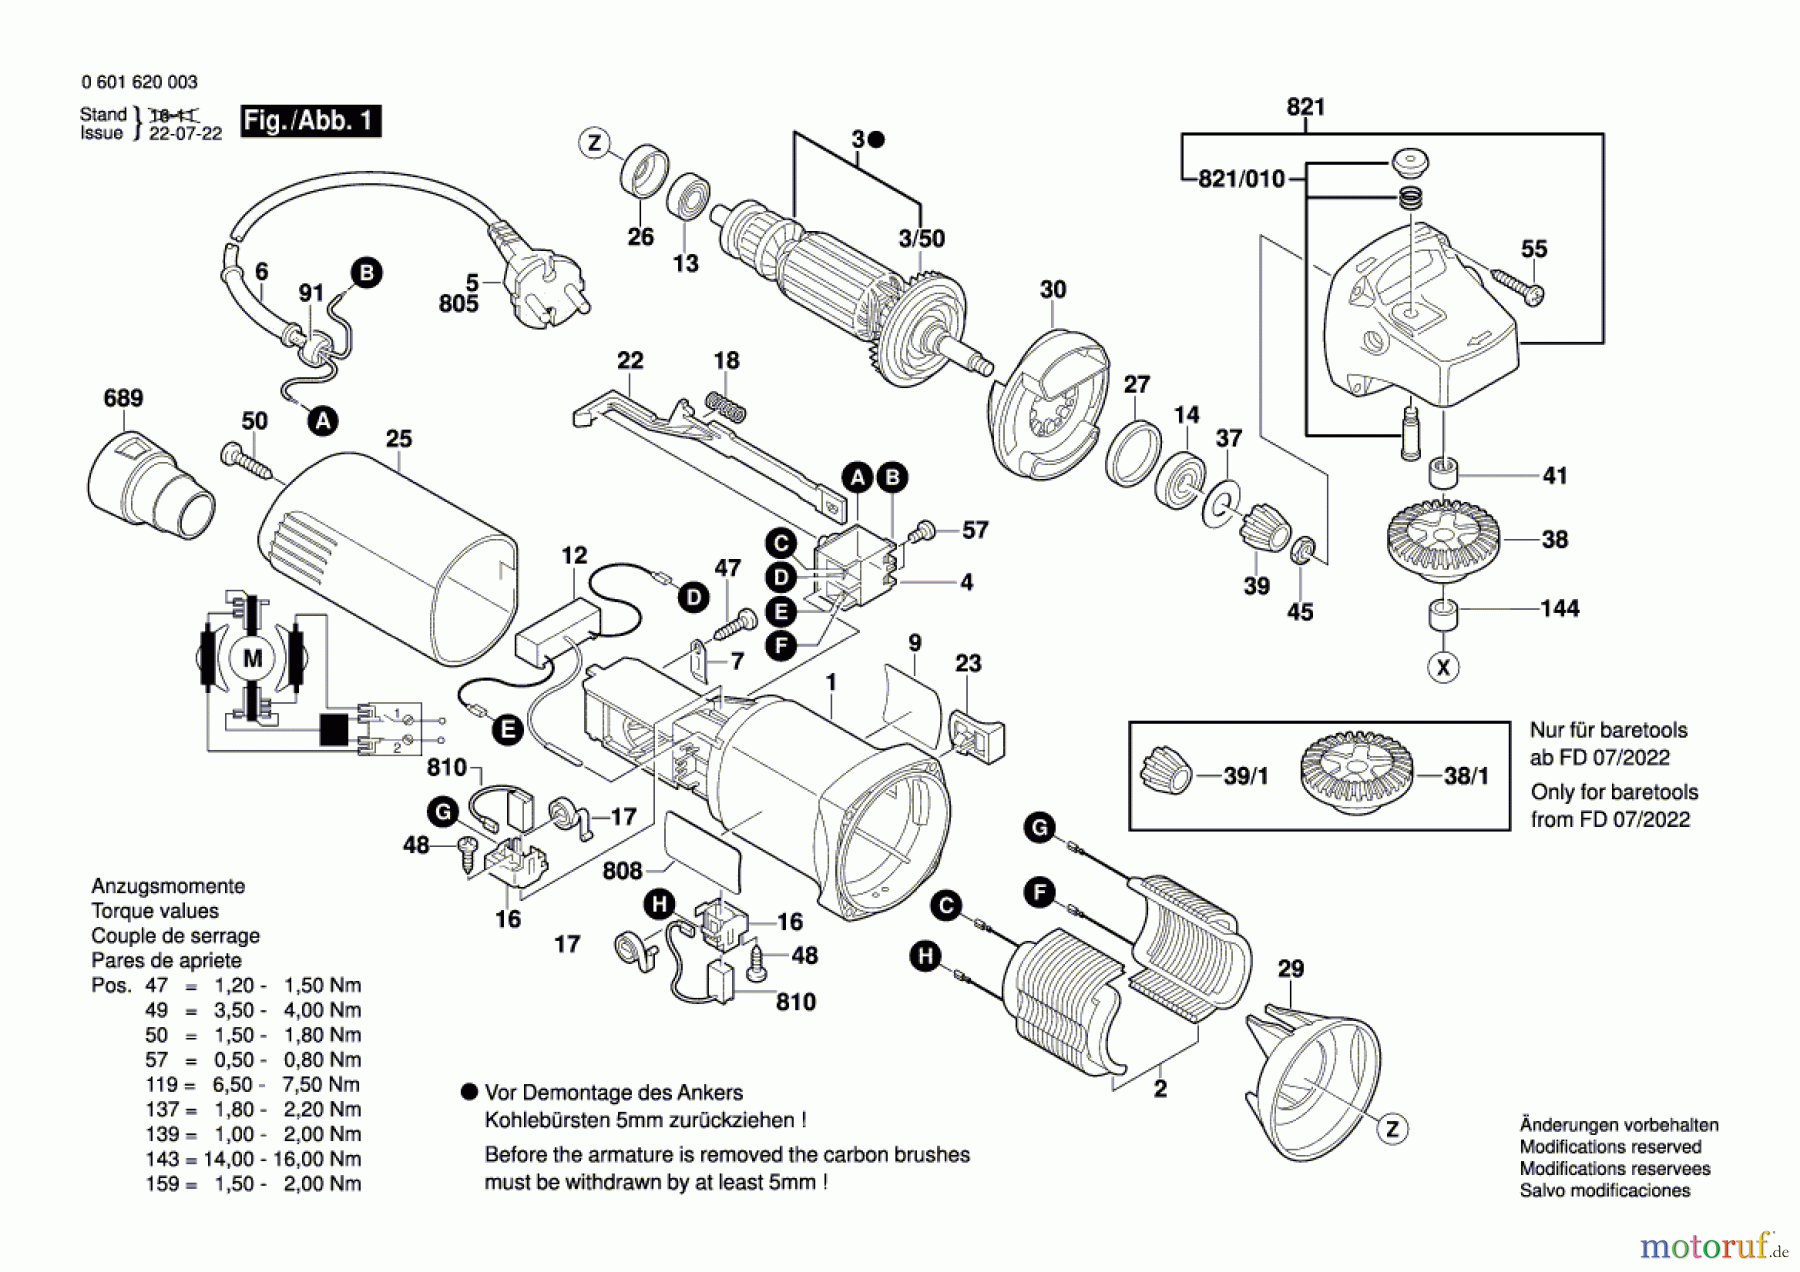  Bosch Werkzeug Flachdübelfräse GFF 22 A Seite 1